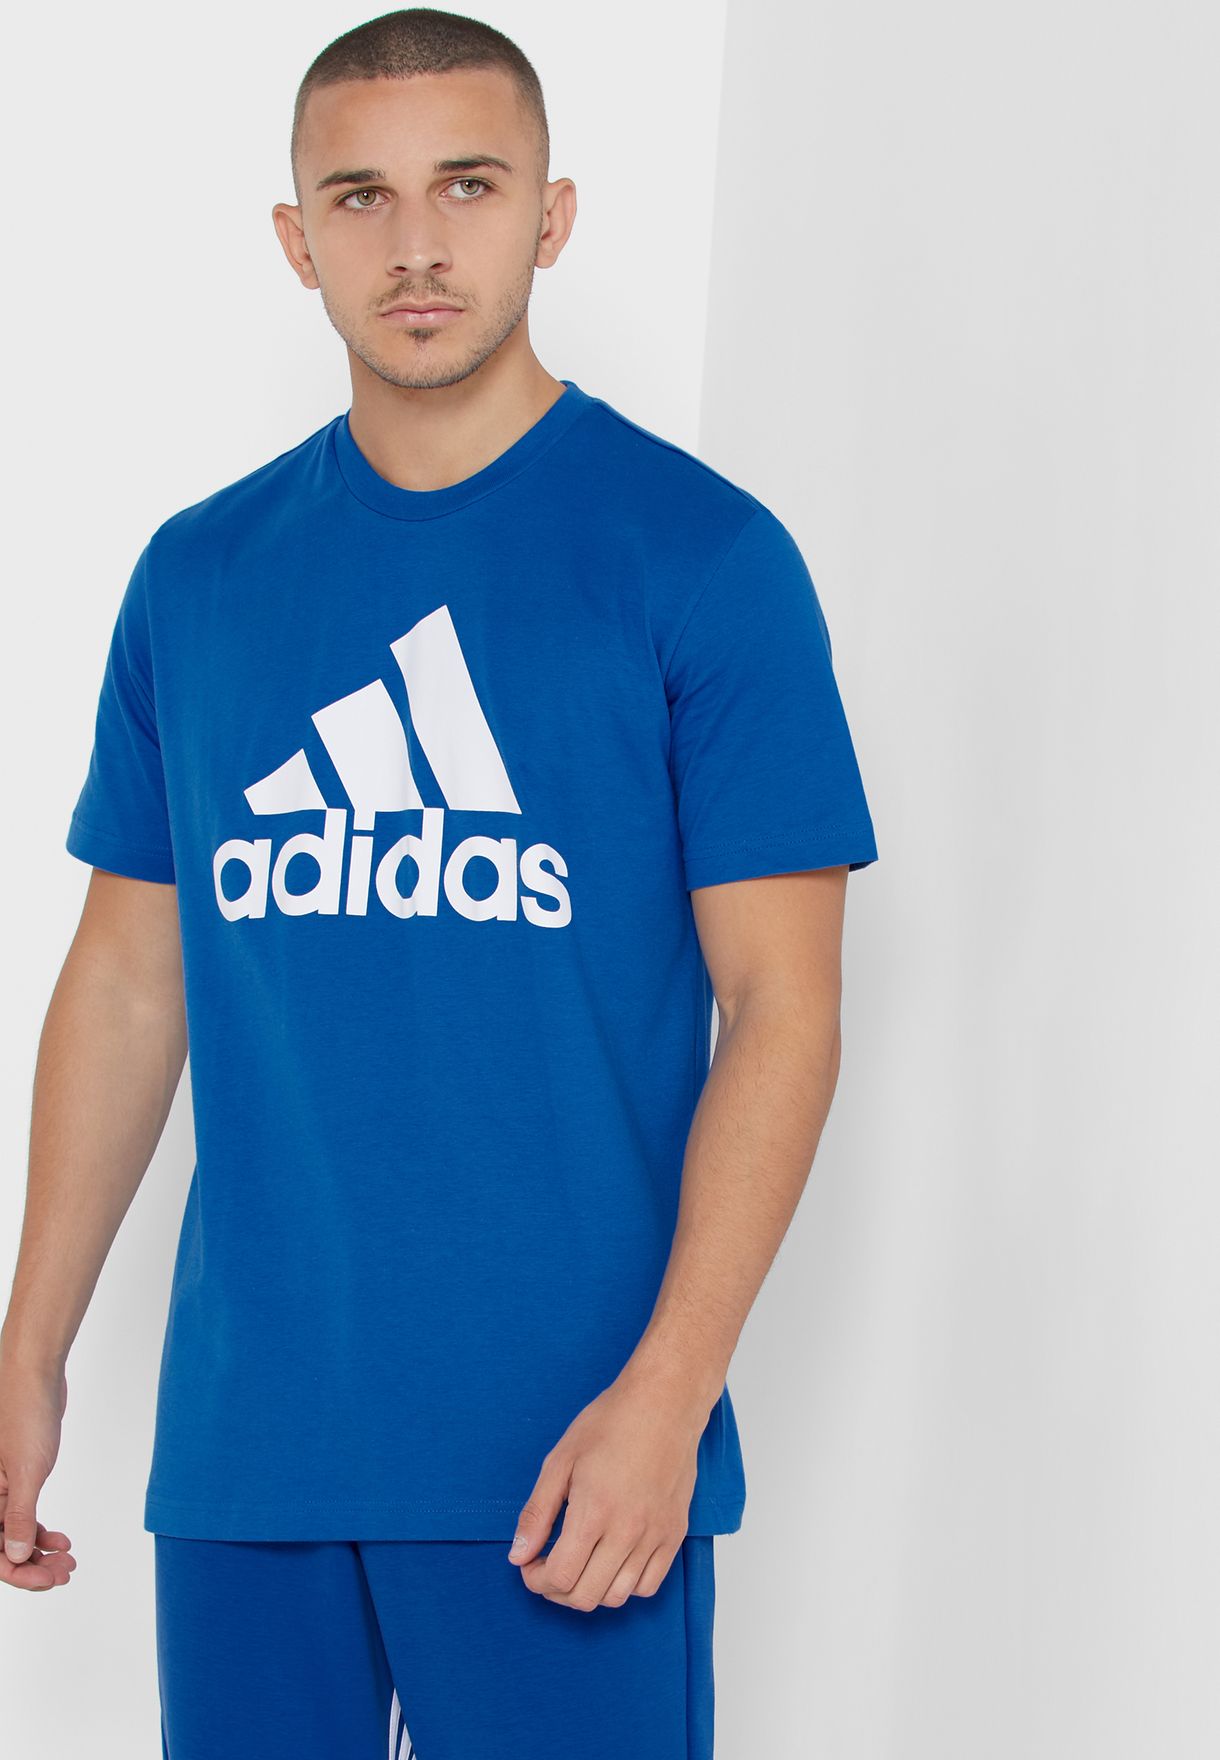 adidas blue shirt mens